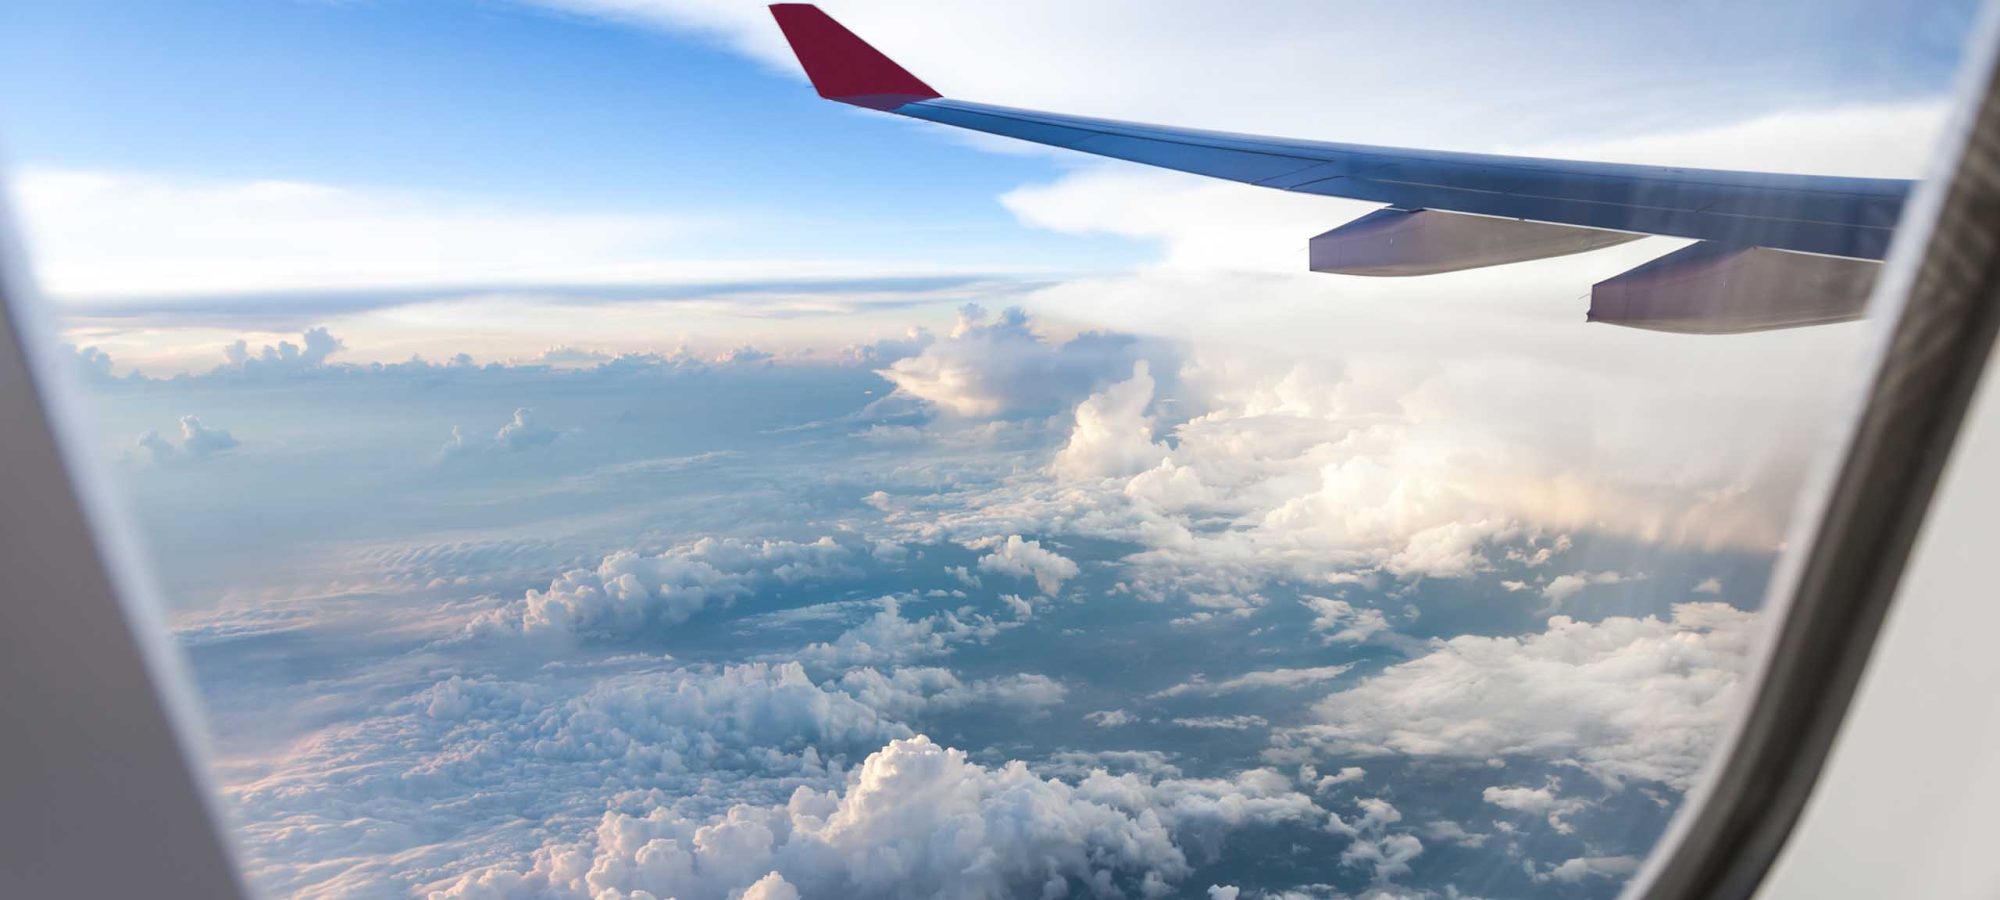 General-Plane-Window-View-Travel-Flight-Banner